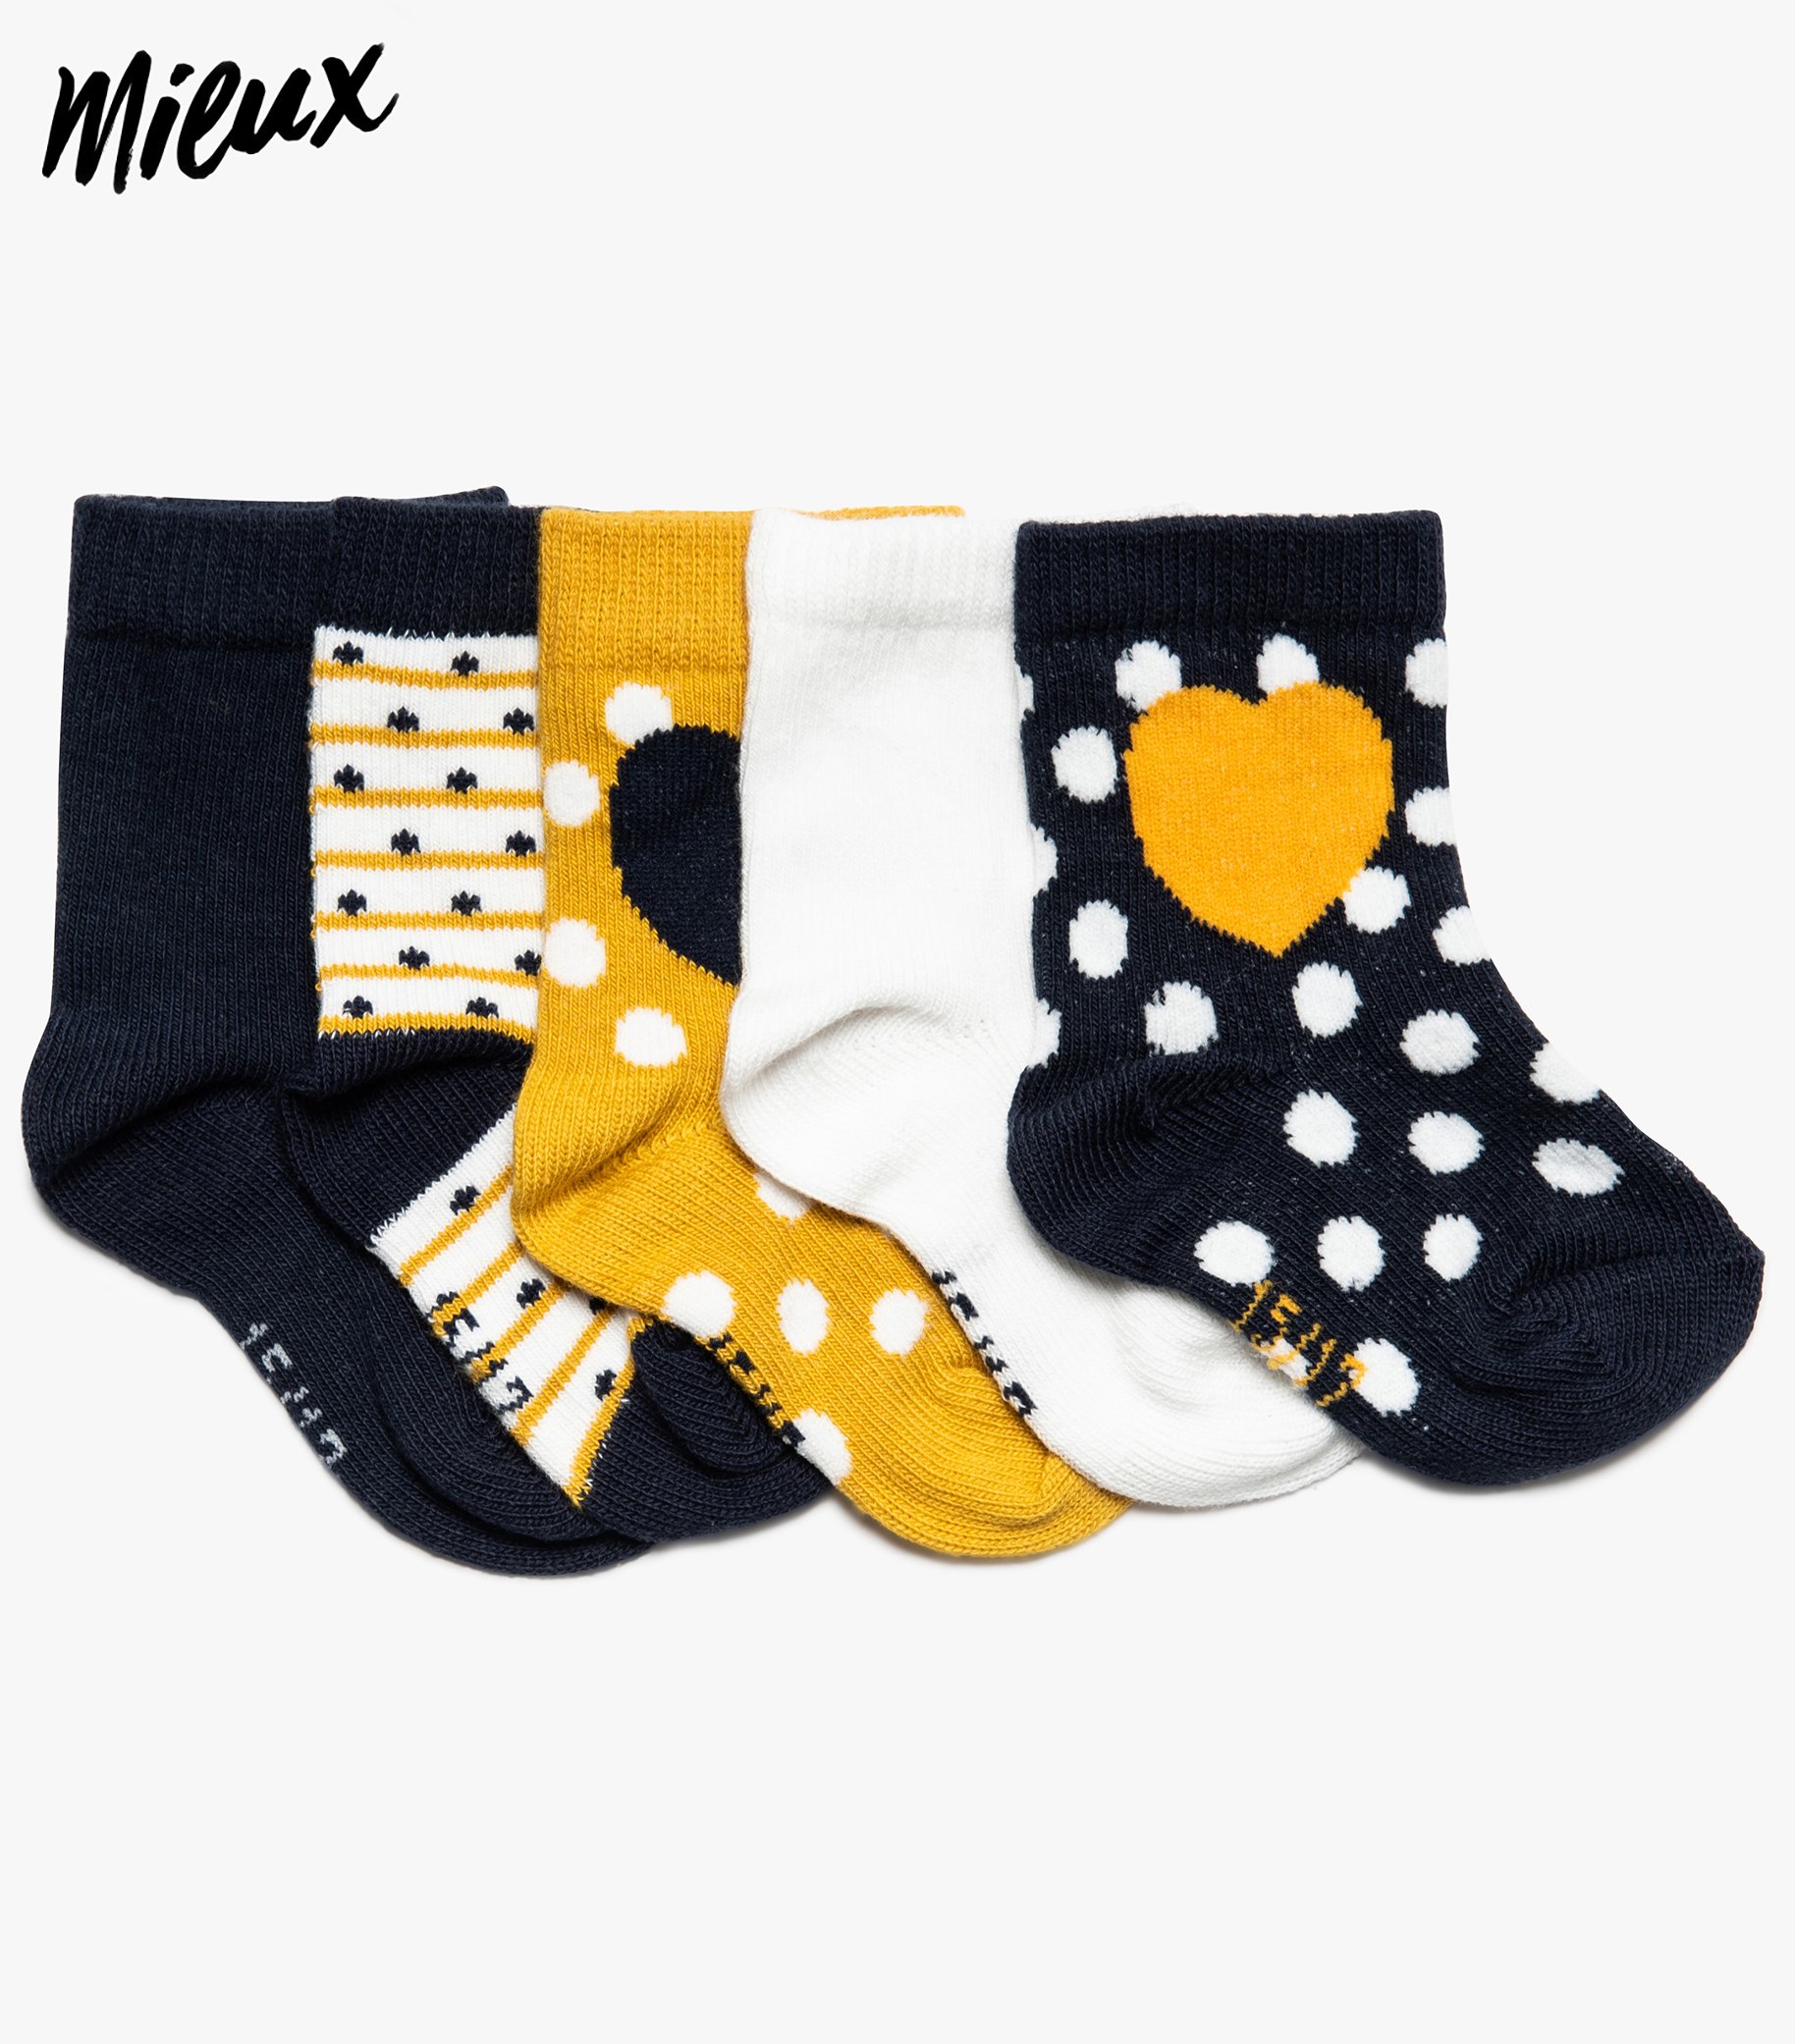 Chaussettes bébé fille à motifs 100% coton bio (lot de 5) jaune